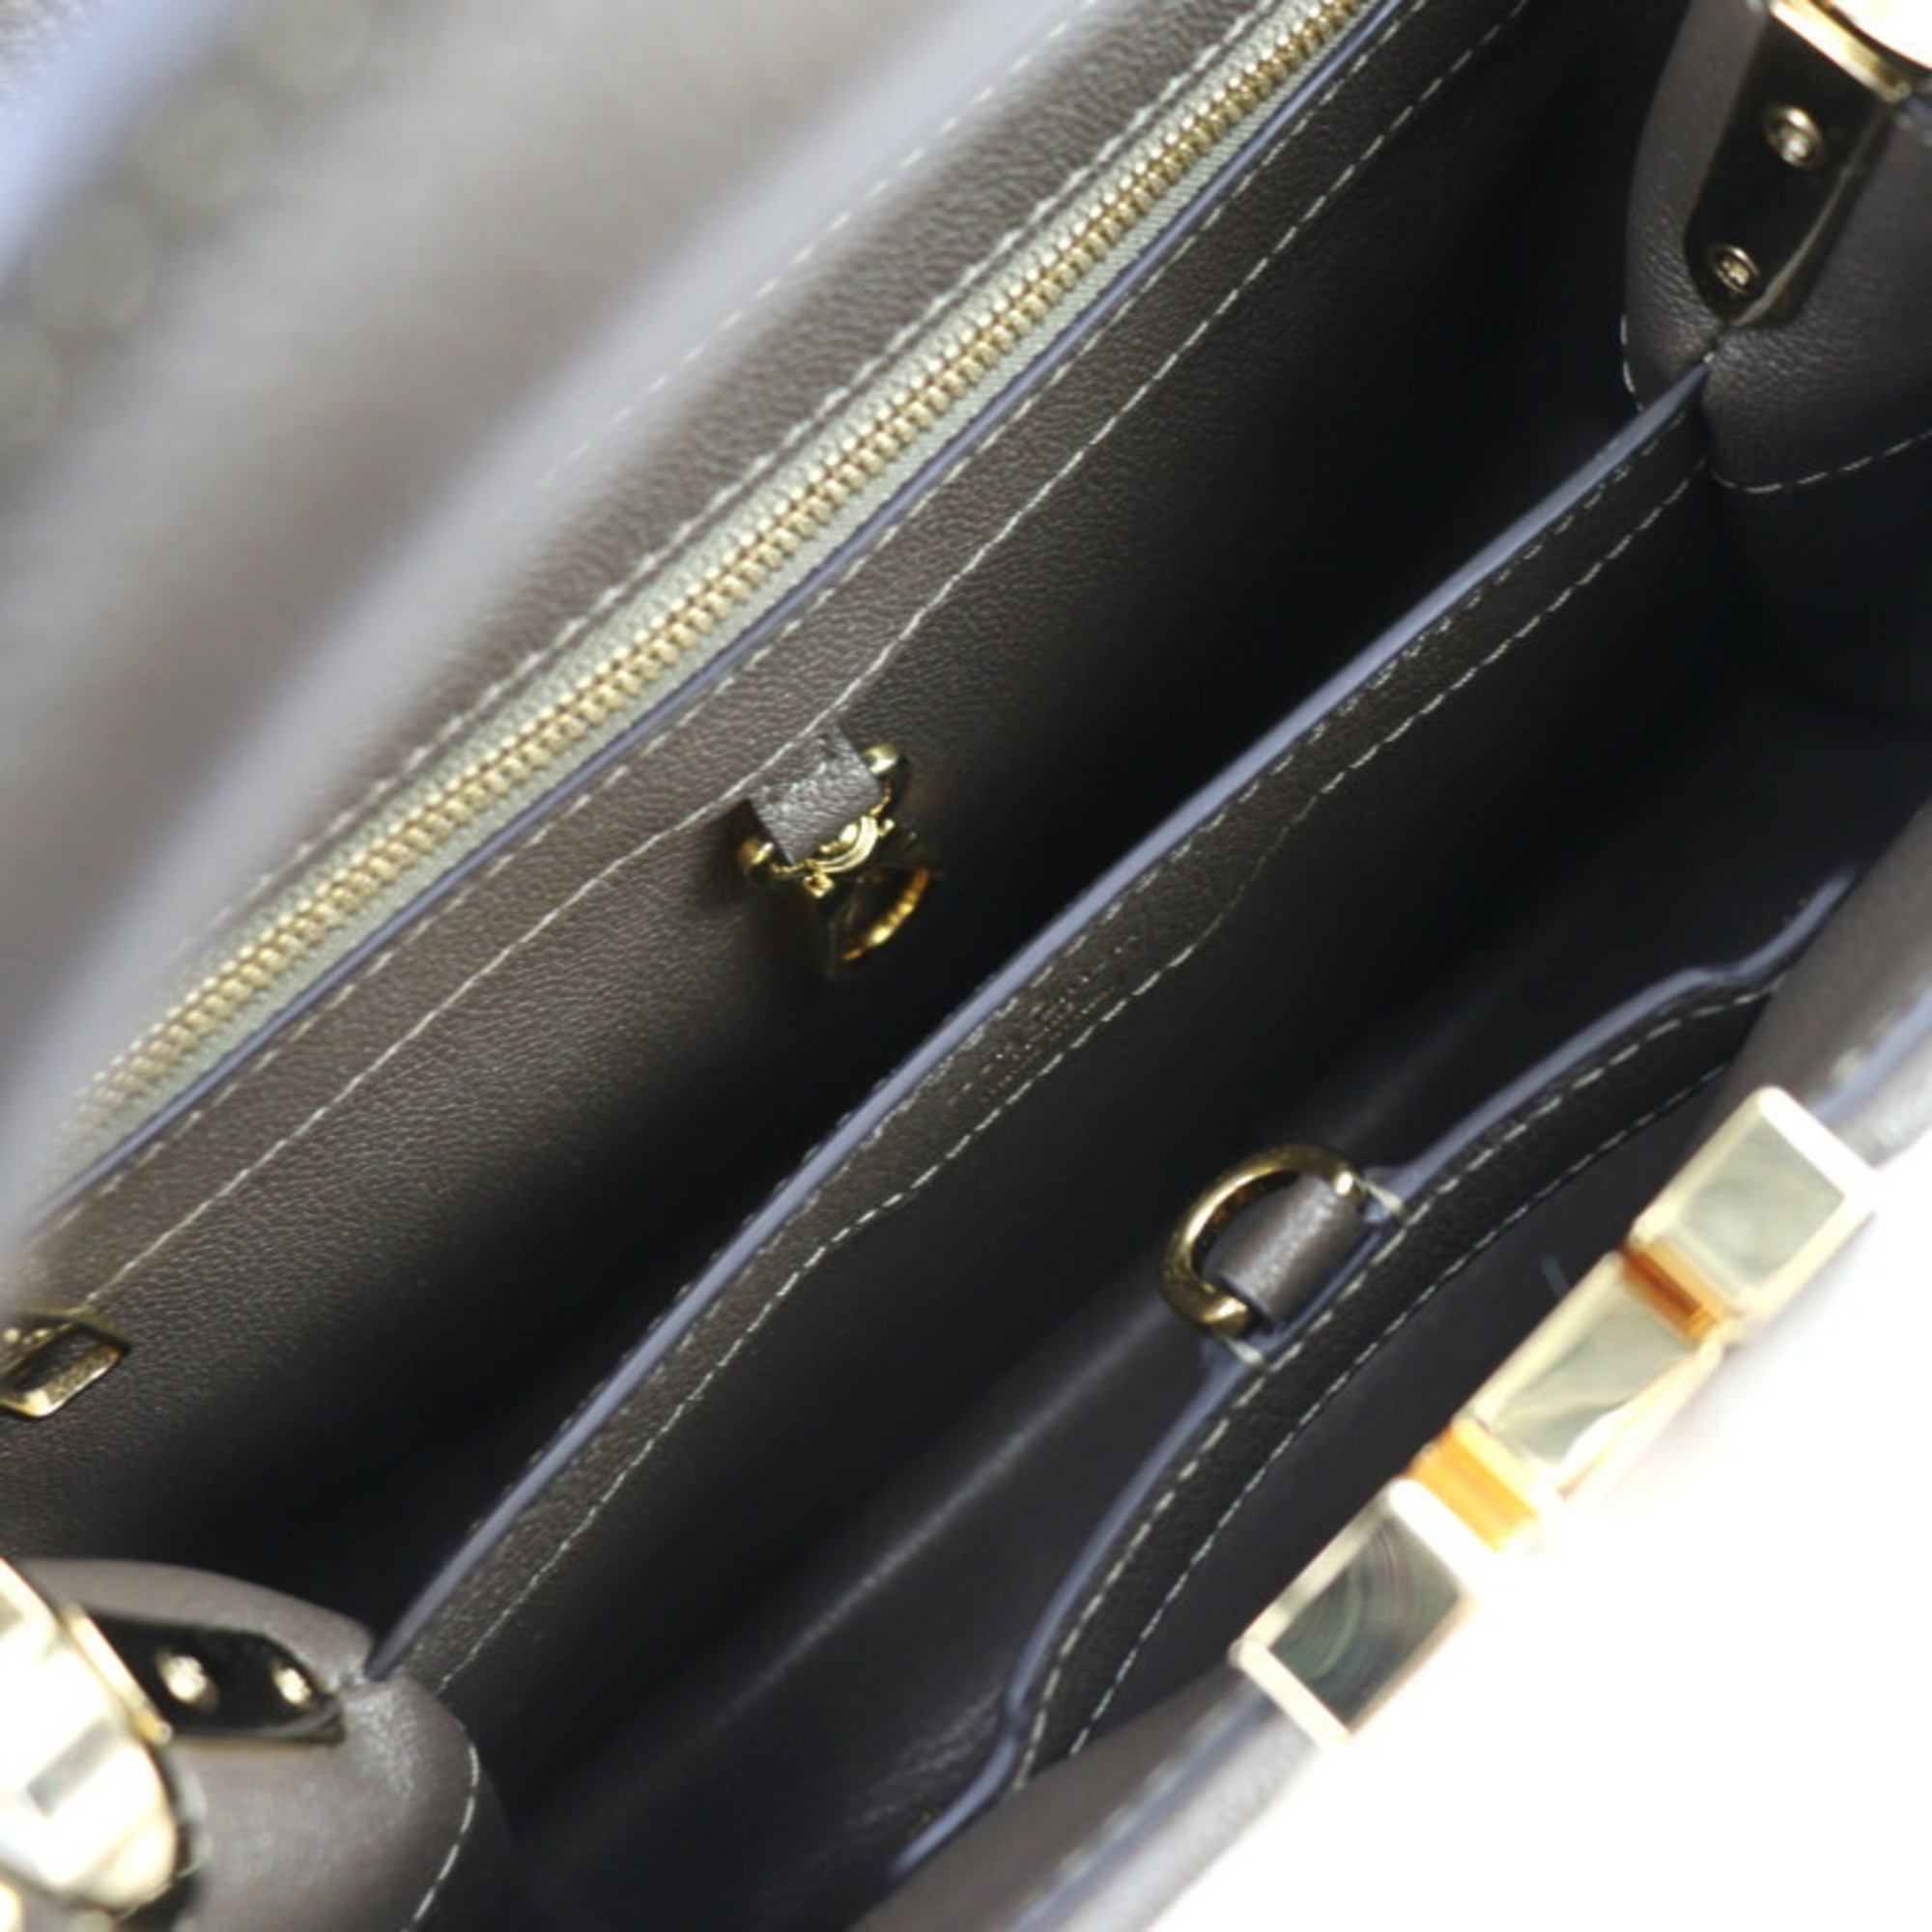 LOUIS VUITTON Louis Vuitton Capucines BB Handbag Leather Mink Fur Olive Beige Shoulder Bag